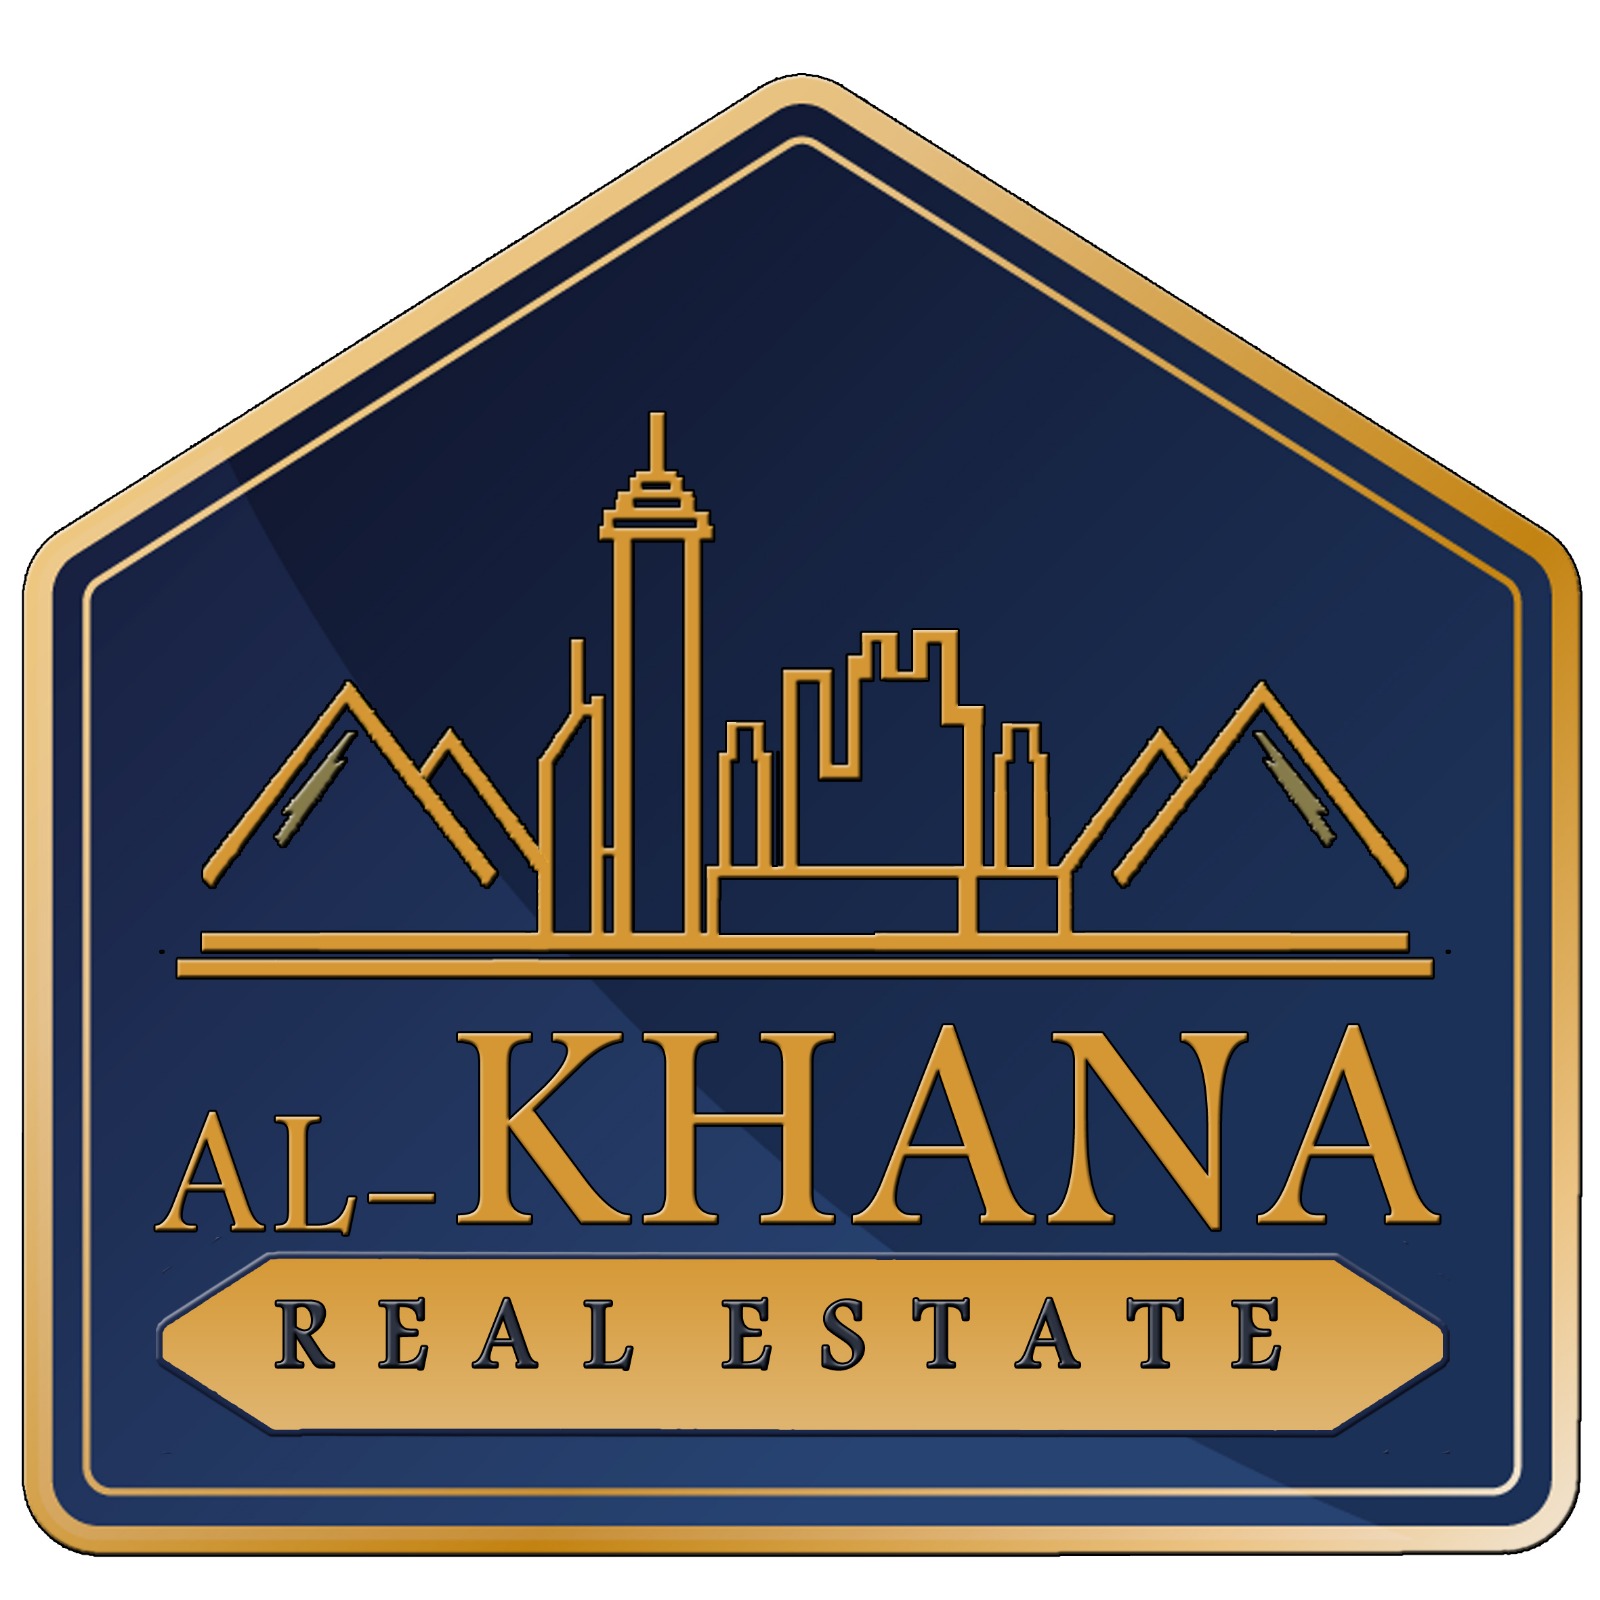 Alkhana Real Estate